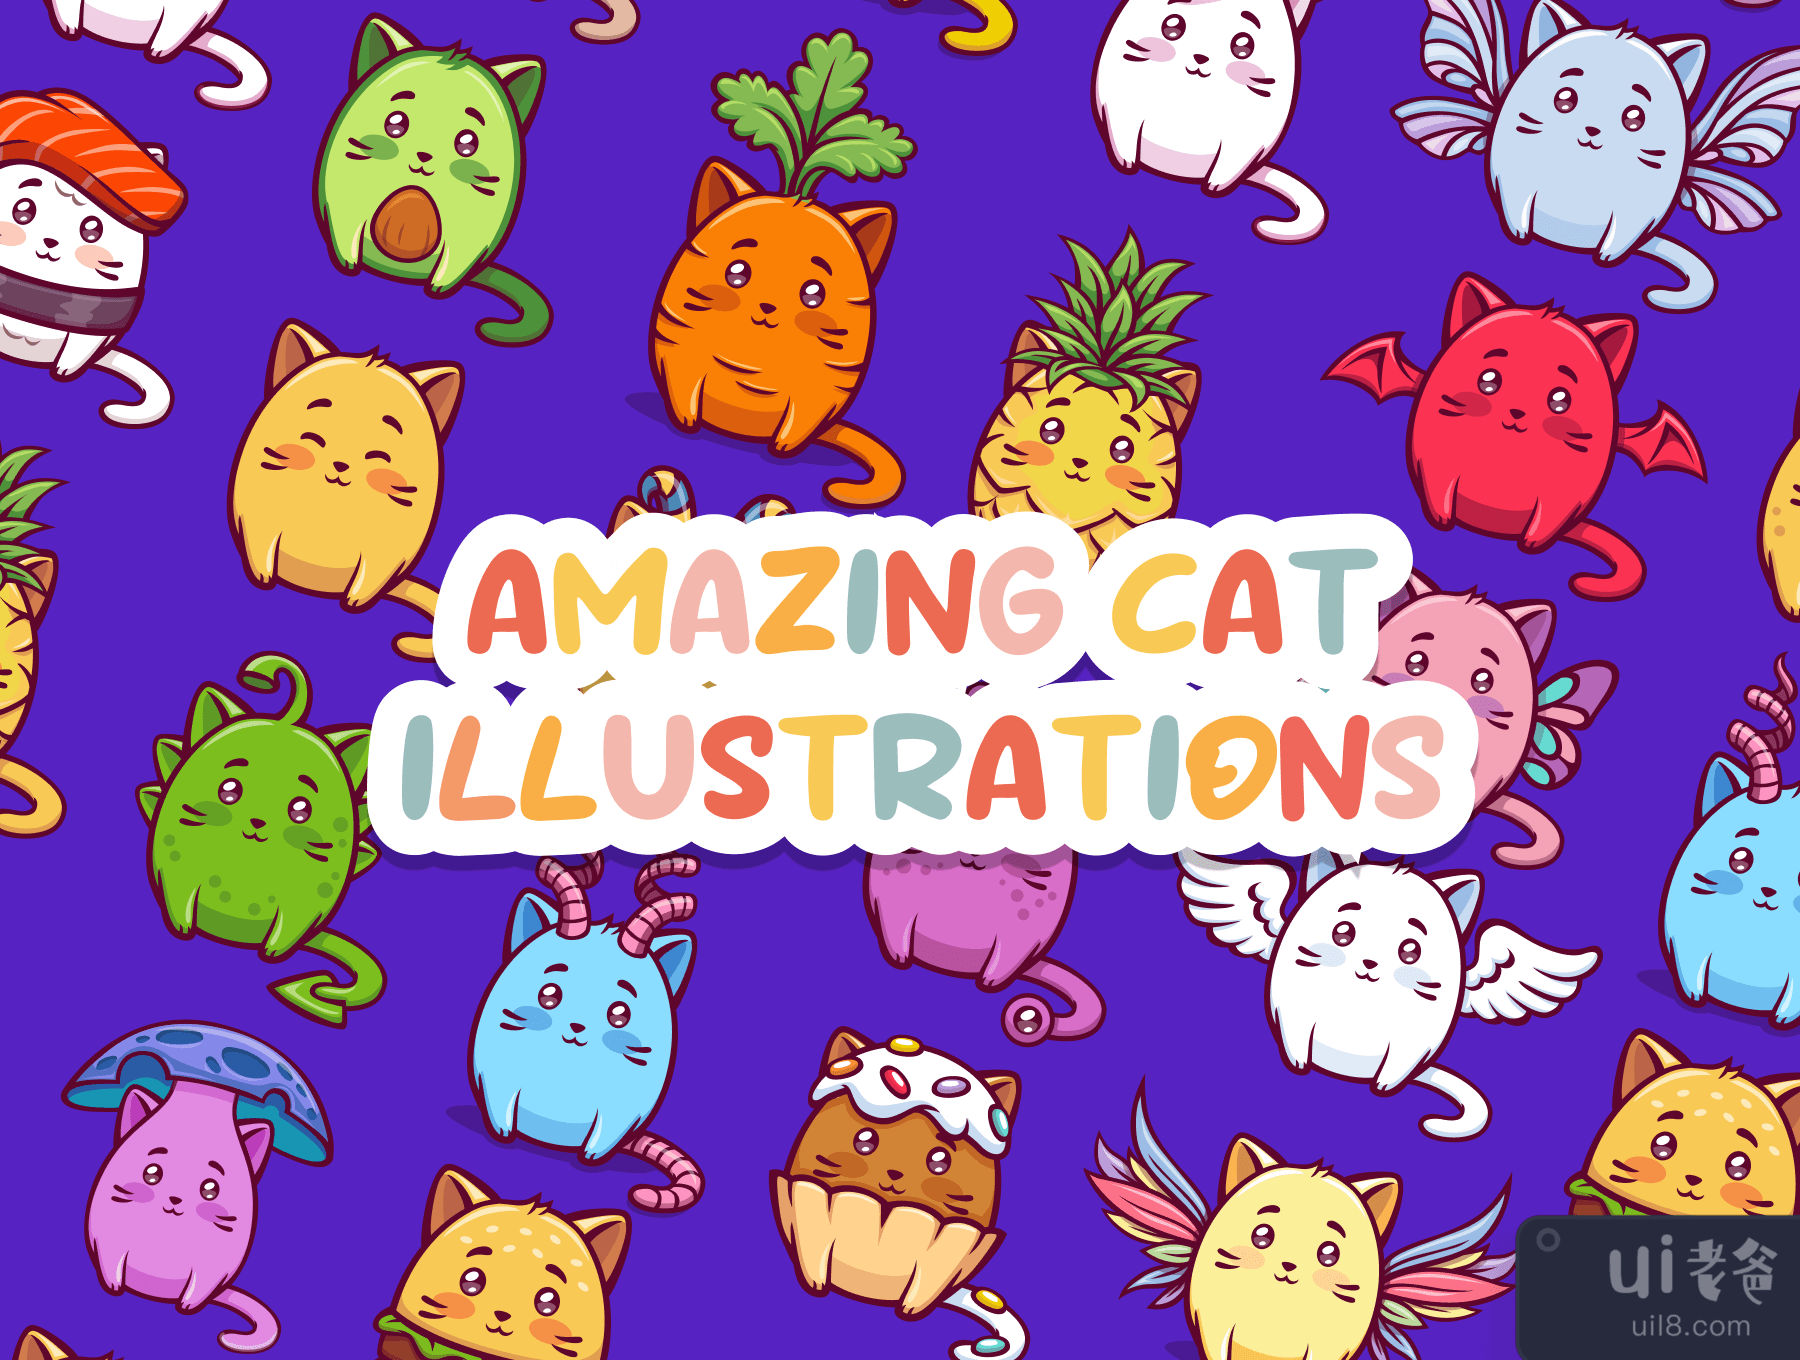 惊人的猫咪插图 (Amazing Cat Illustrations)插图